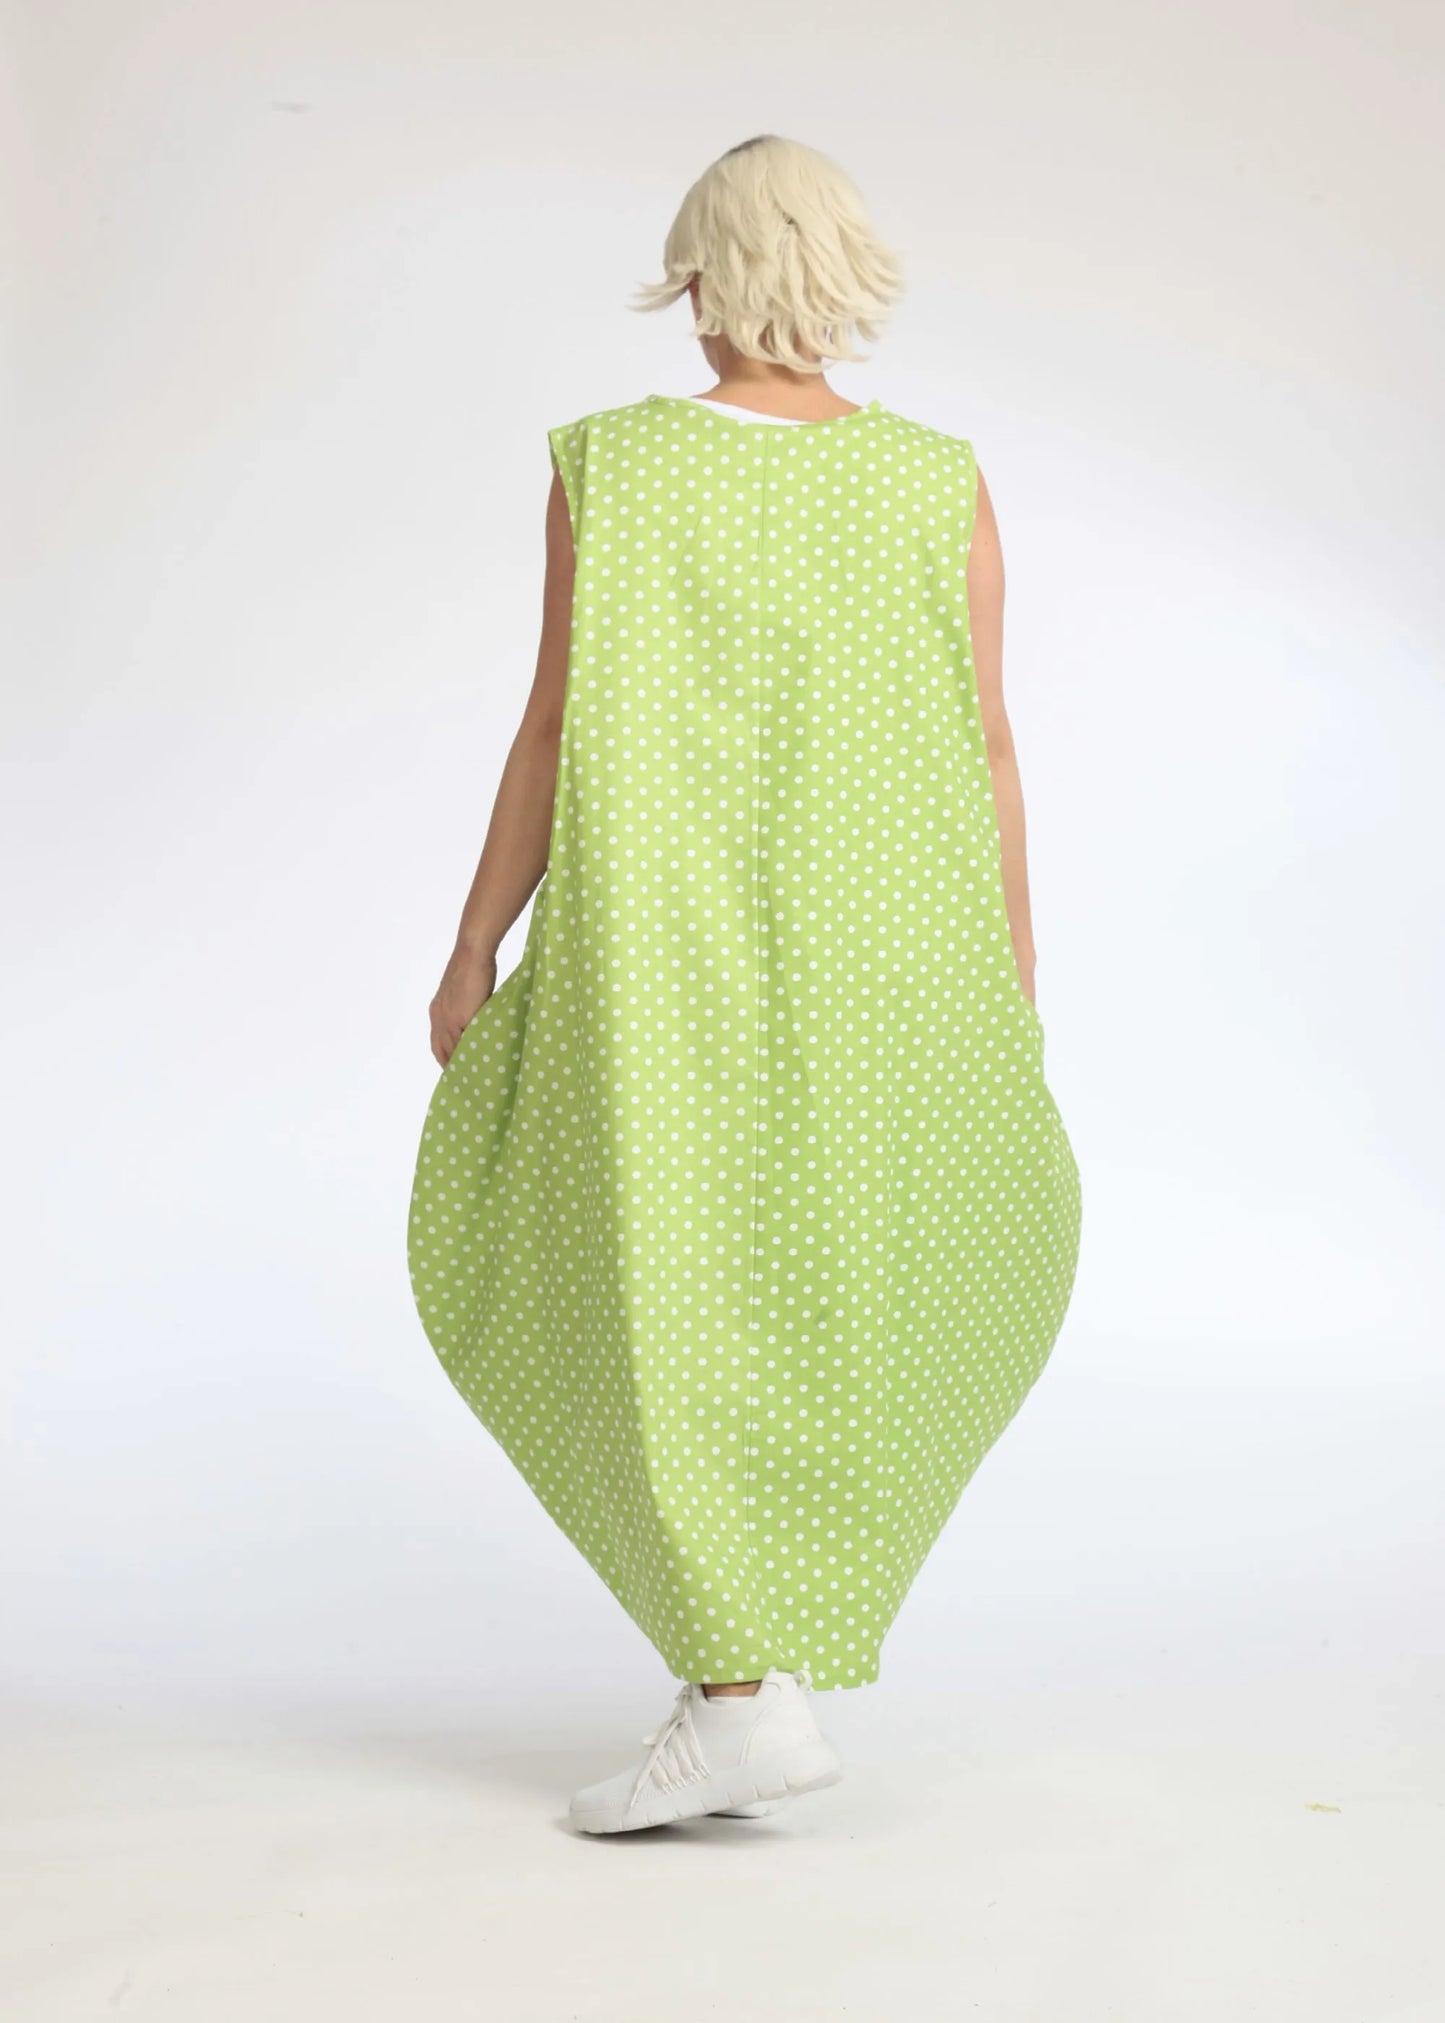 Sommer Kleid in Ballon Form aus glatter Popeline Qualität, Freya in Apfelgrün-Weiß